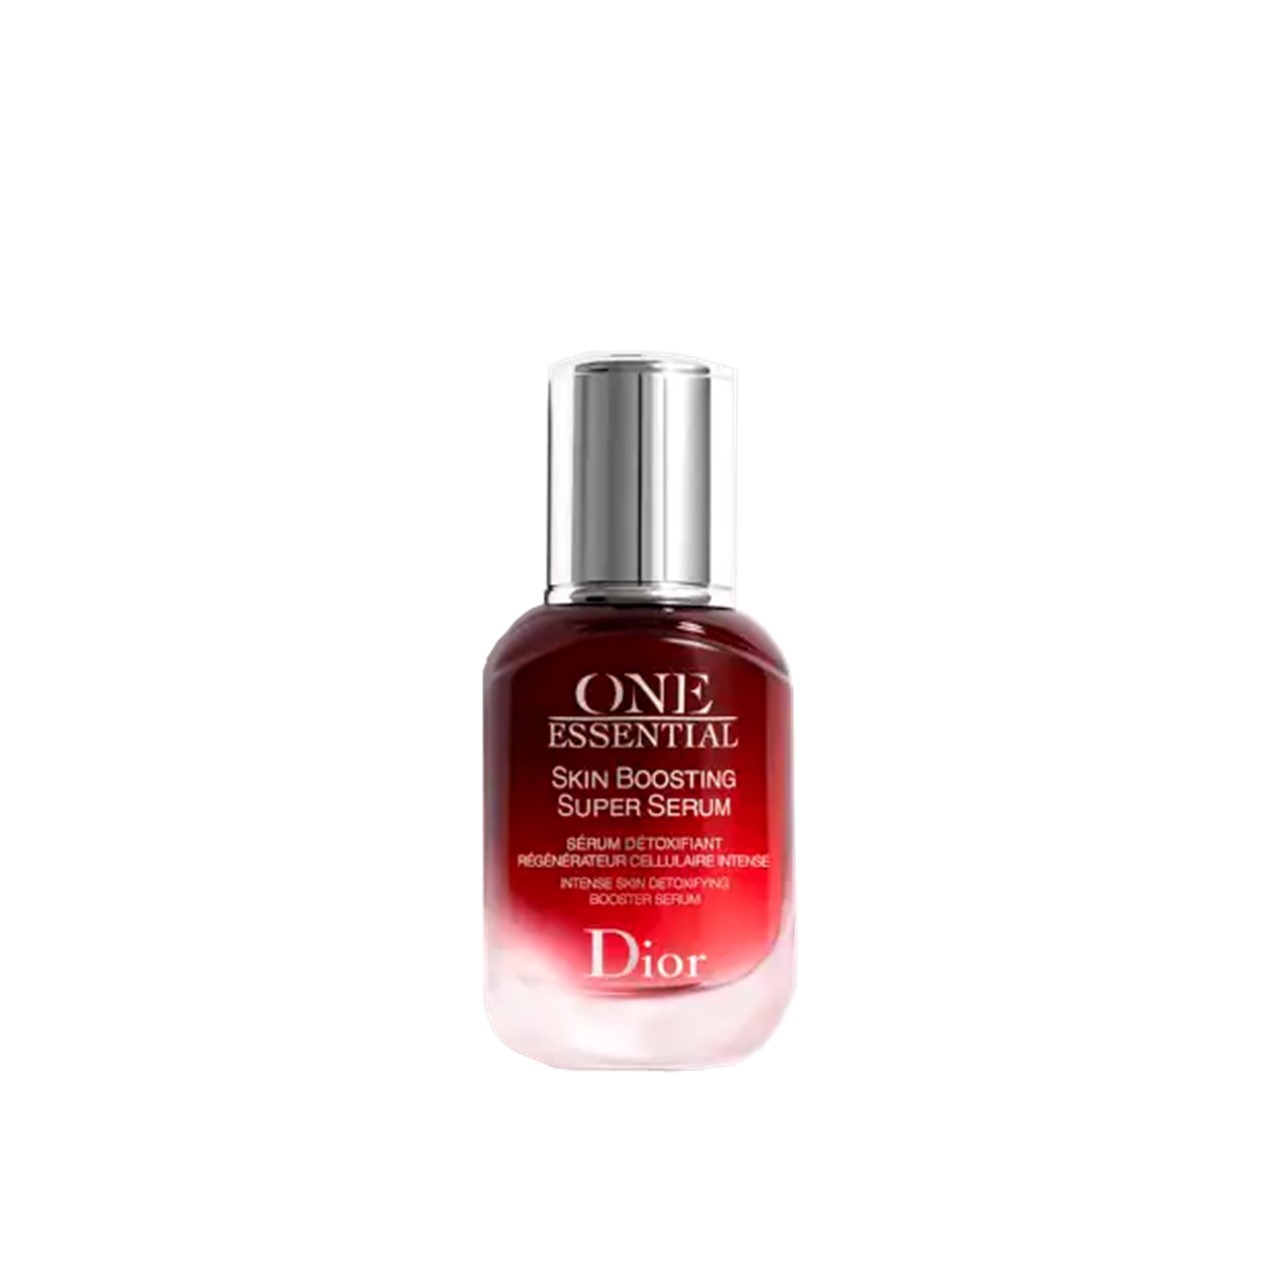 Dior One Essential Skin Boosting Super Serum 30ml (1.01fl oz)